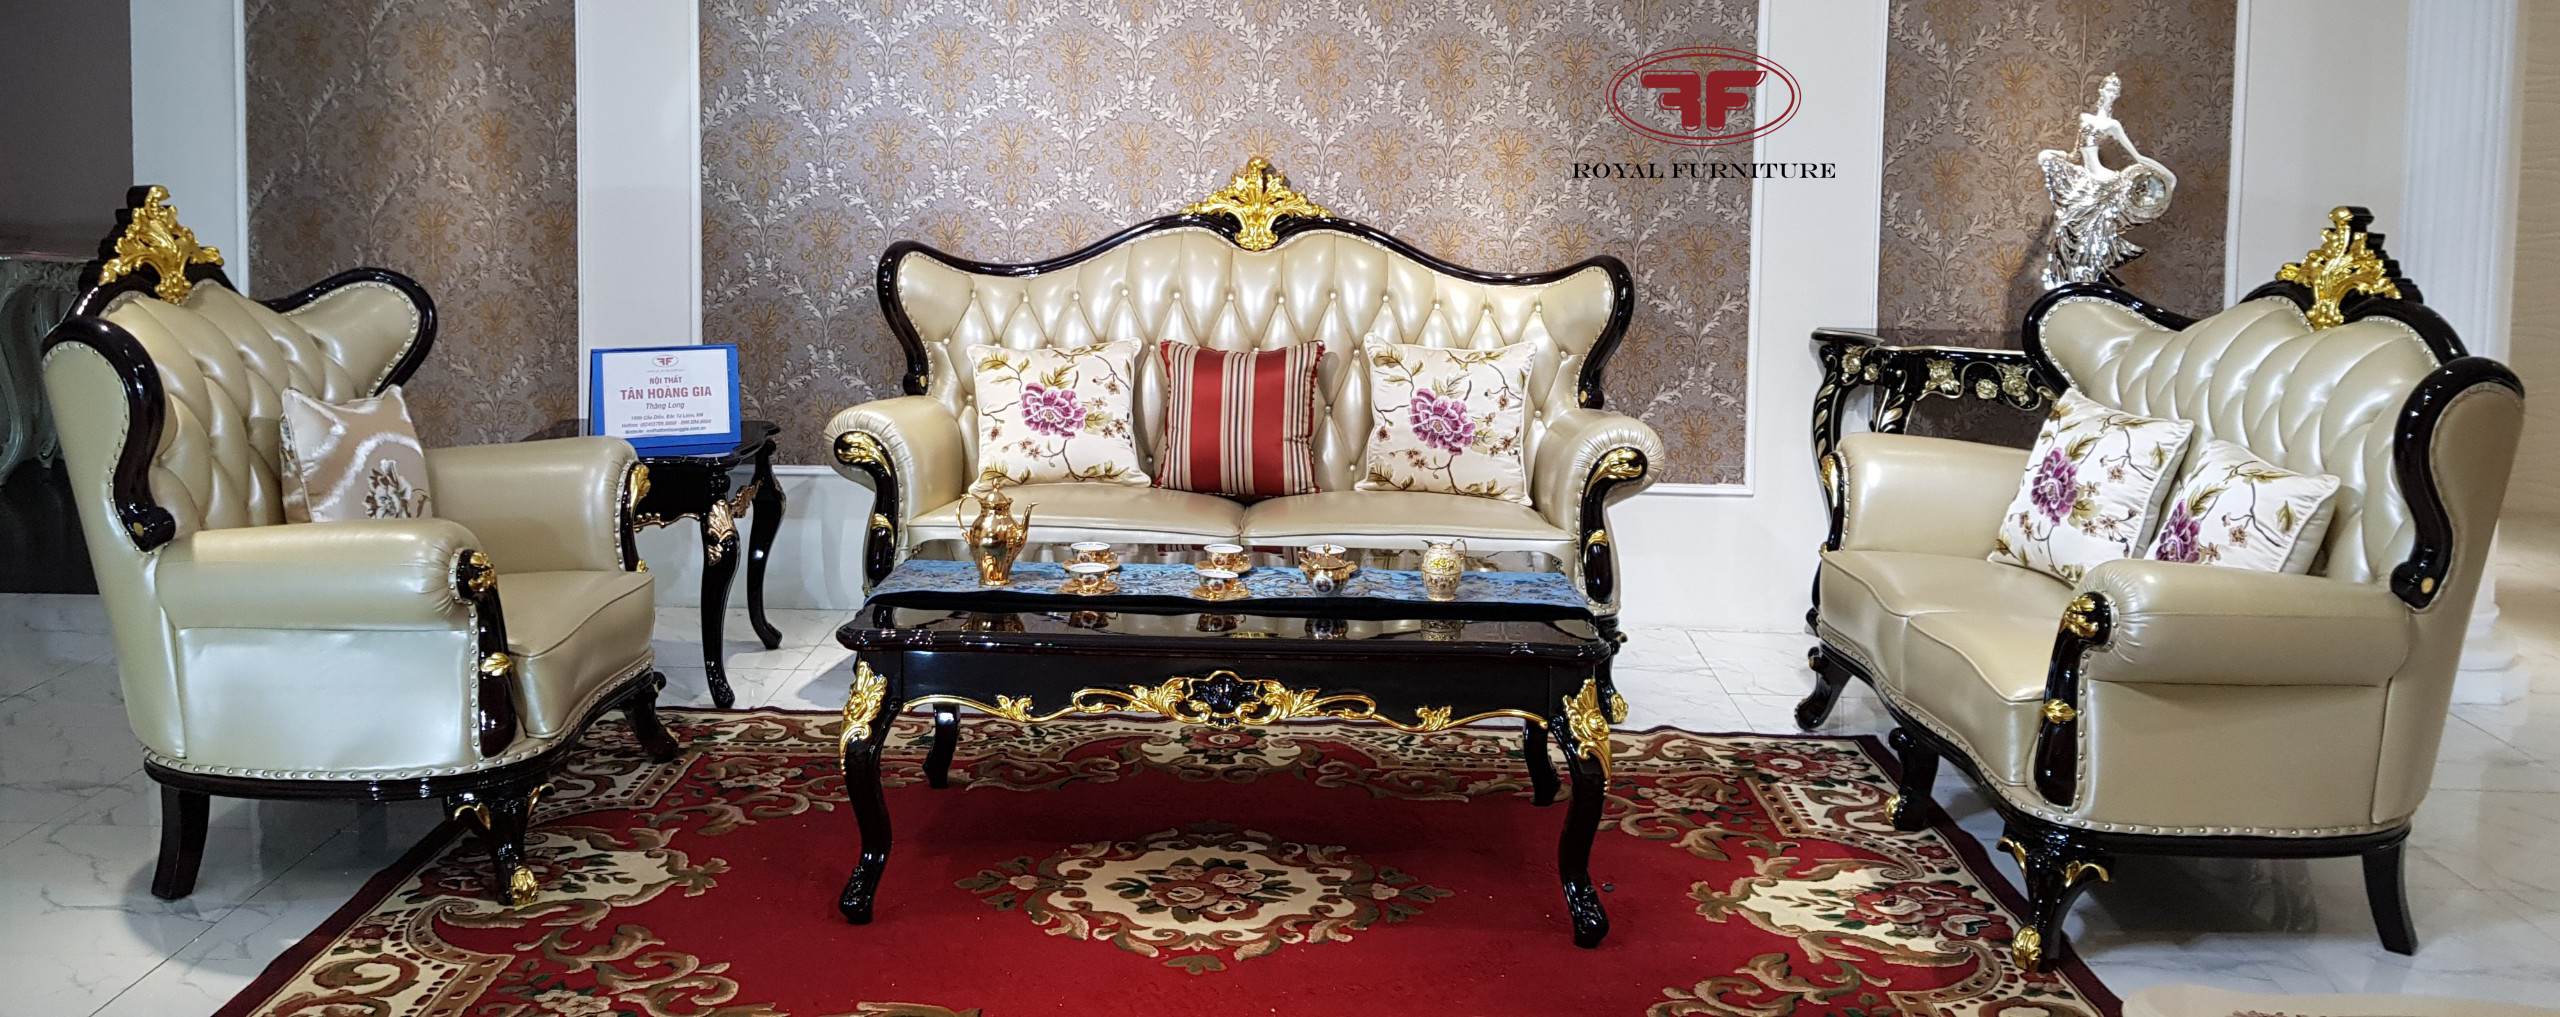 Bộ sofa tân cổ điển dát vàng nhập khẩu cao cấp G9920